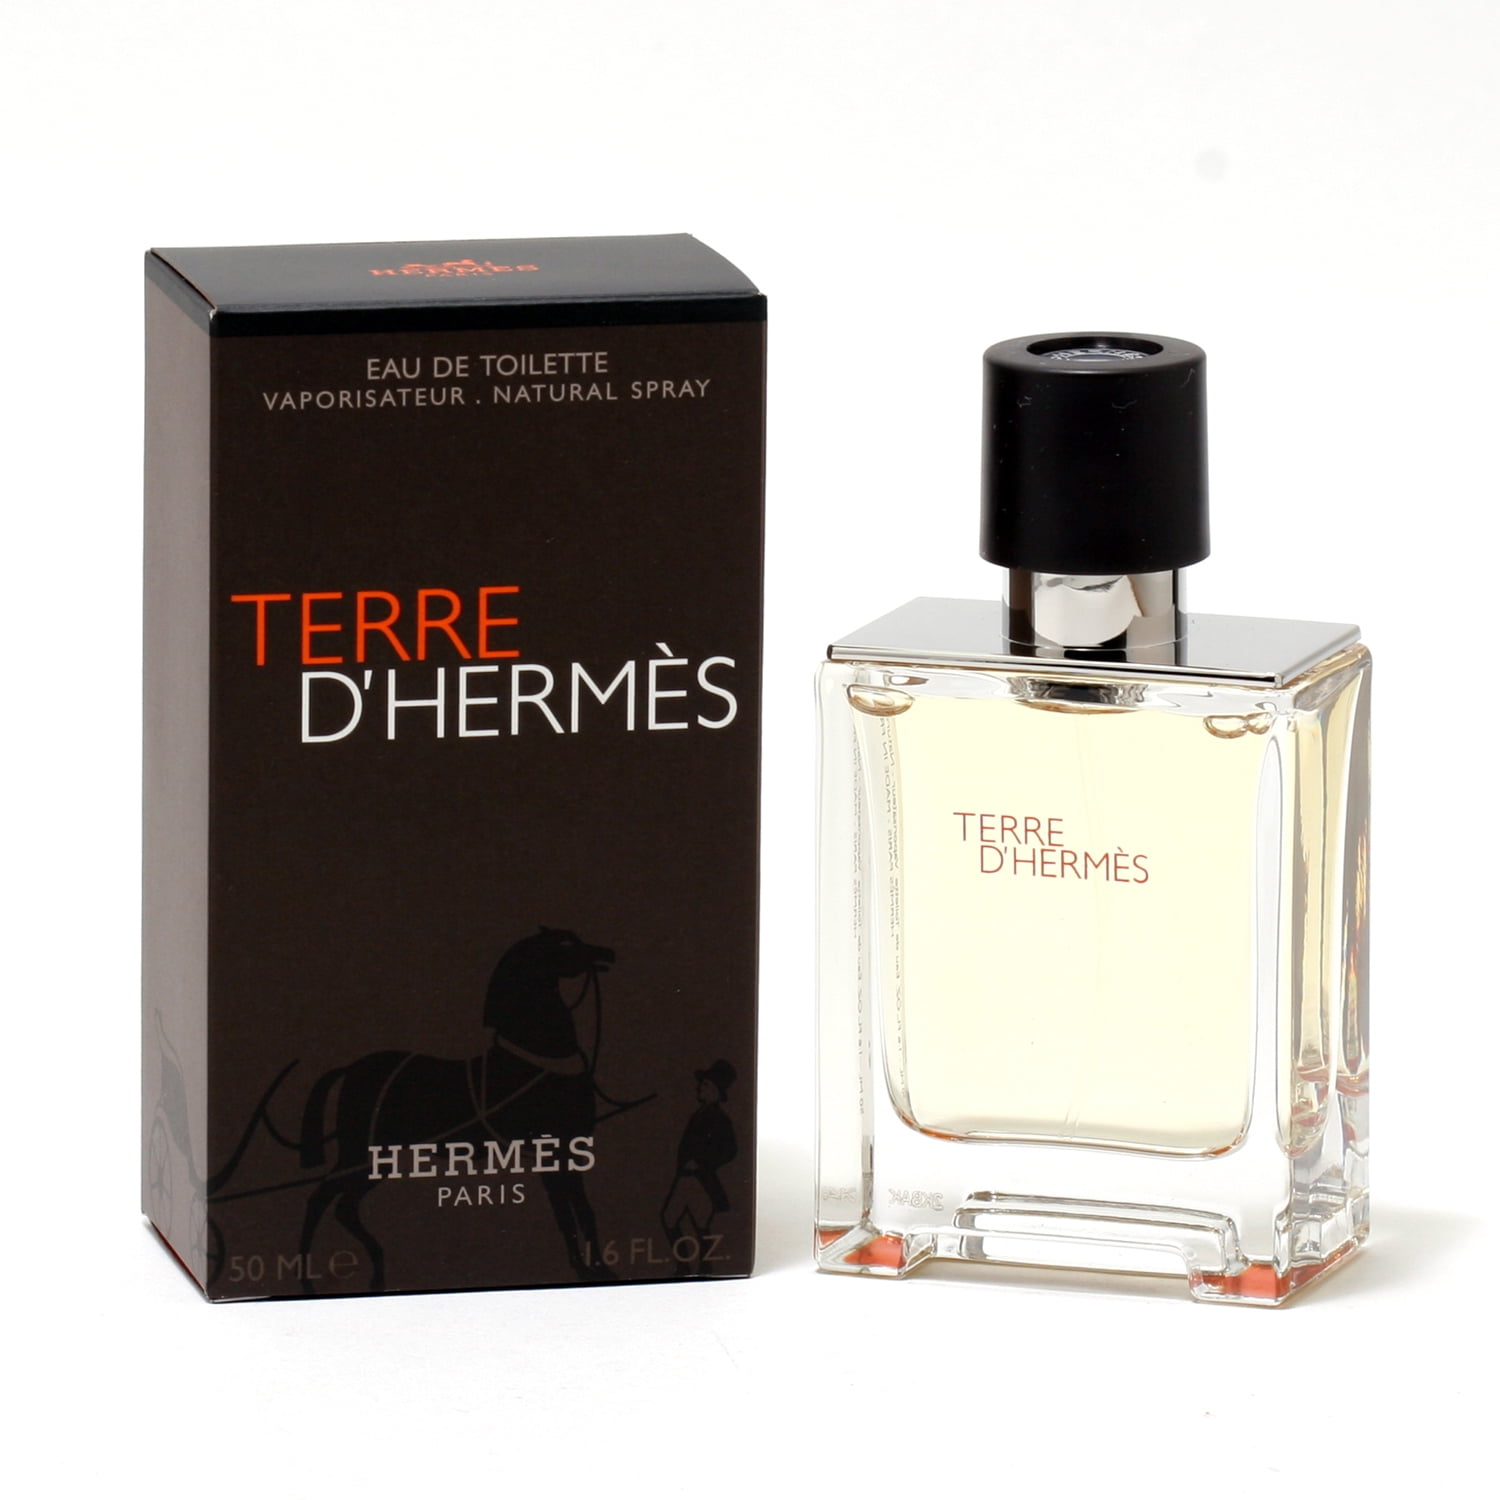 Туалетная вода hermes terre. Hermes "Terre d`Hermes " 100 ml. Hermes Terre d'Hermes pour homme туалетная вода 100мл. Hermes Terre d'Hermes EDT M. Terre d'Hermes EDT for men 100 ml.